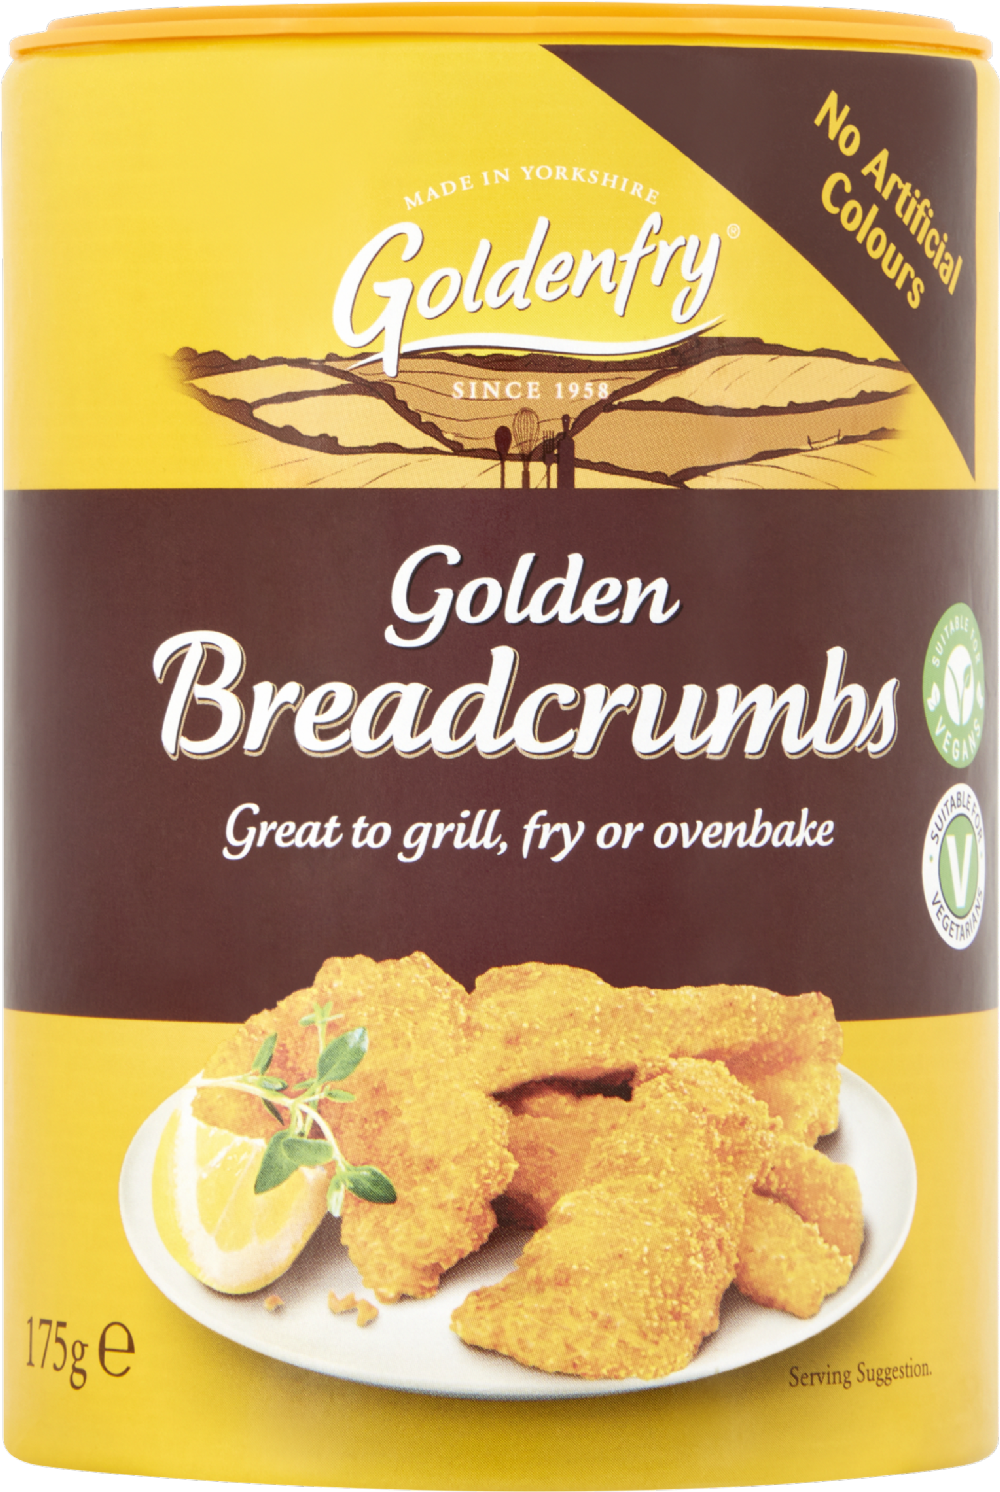 GOLDENFRY Golden Breadcrumbs 175g